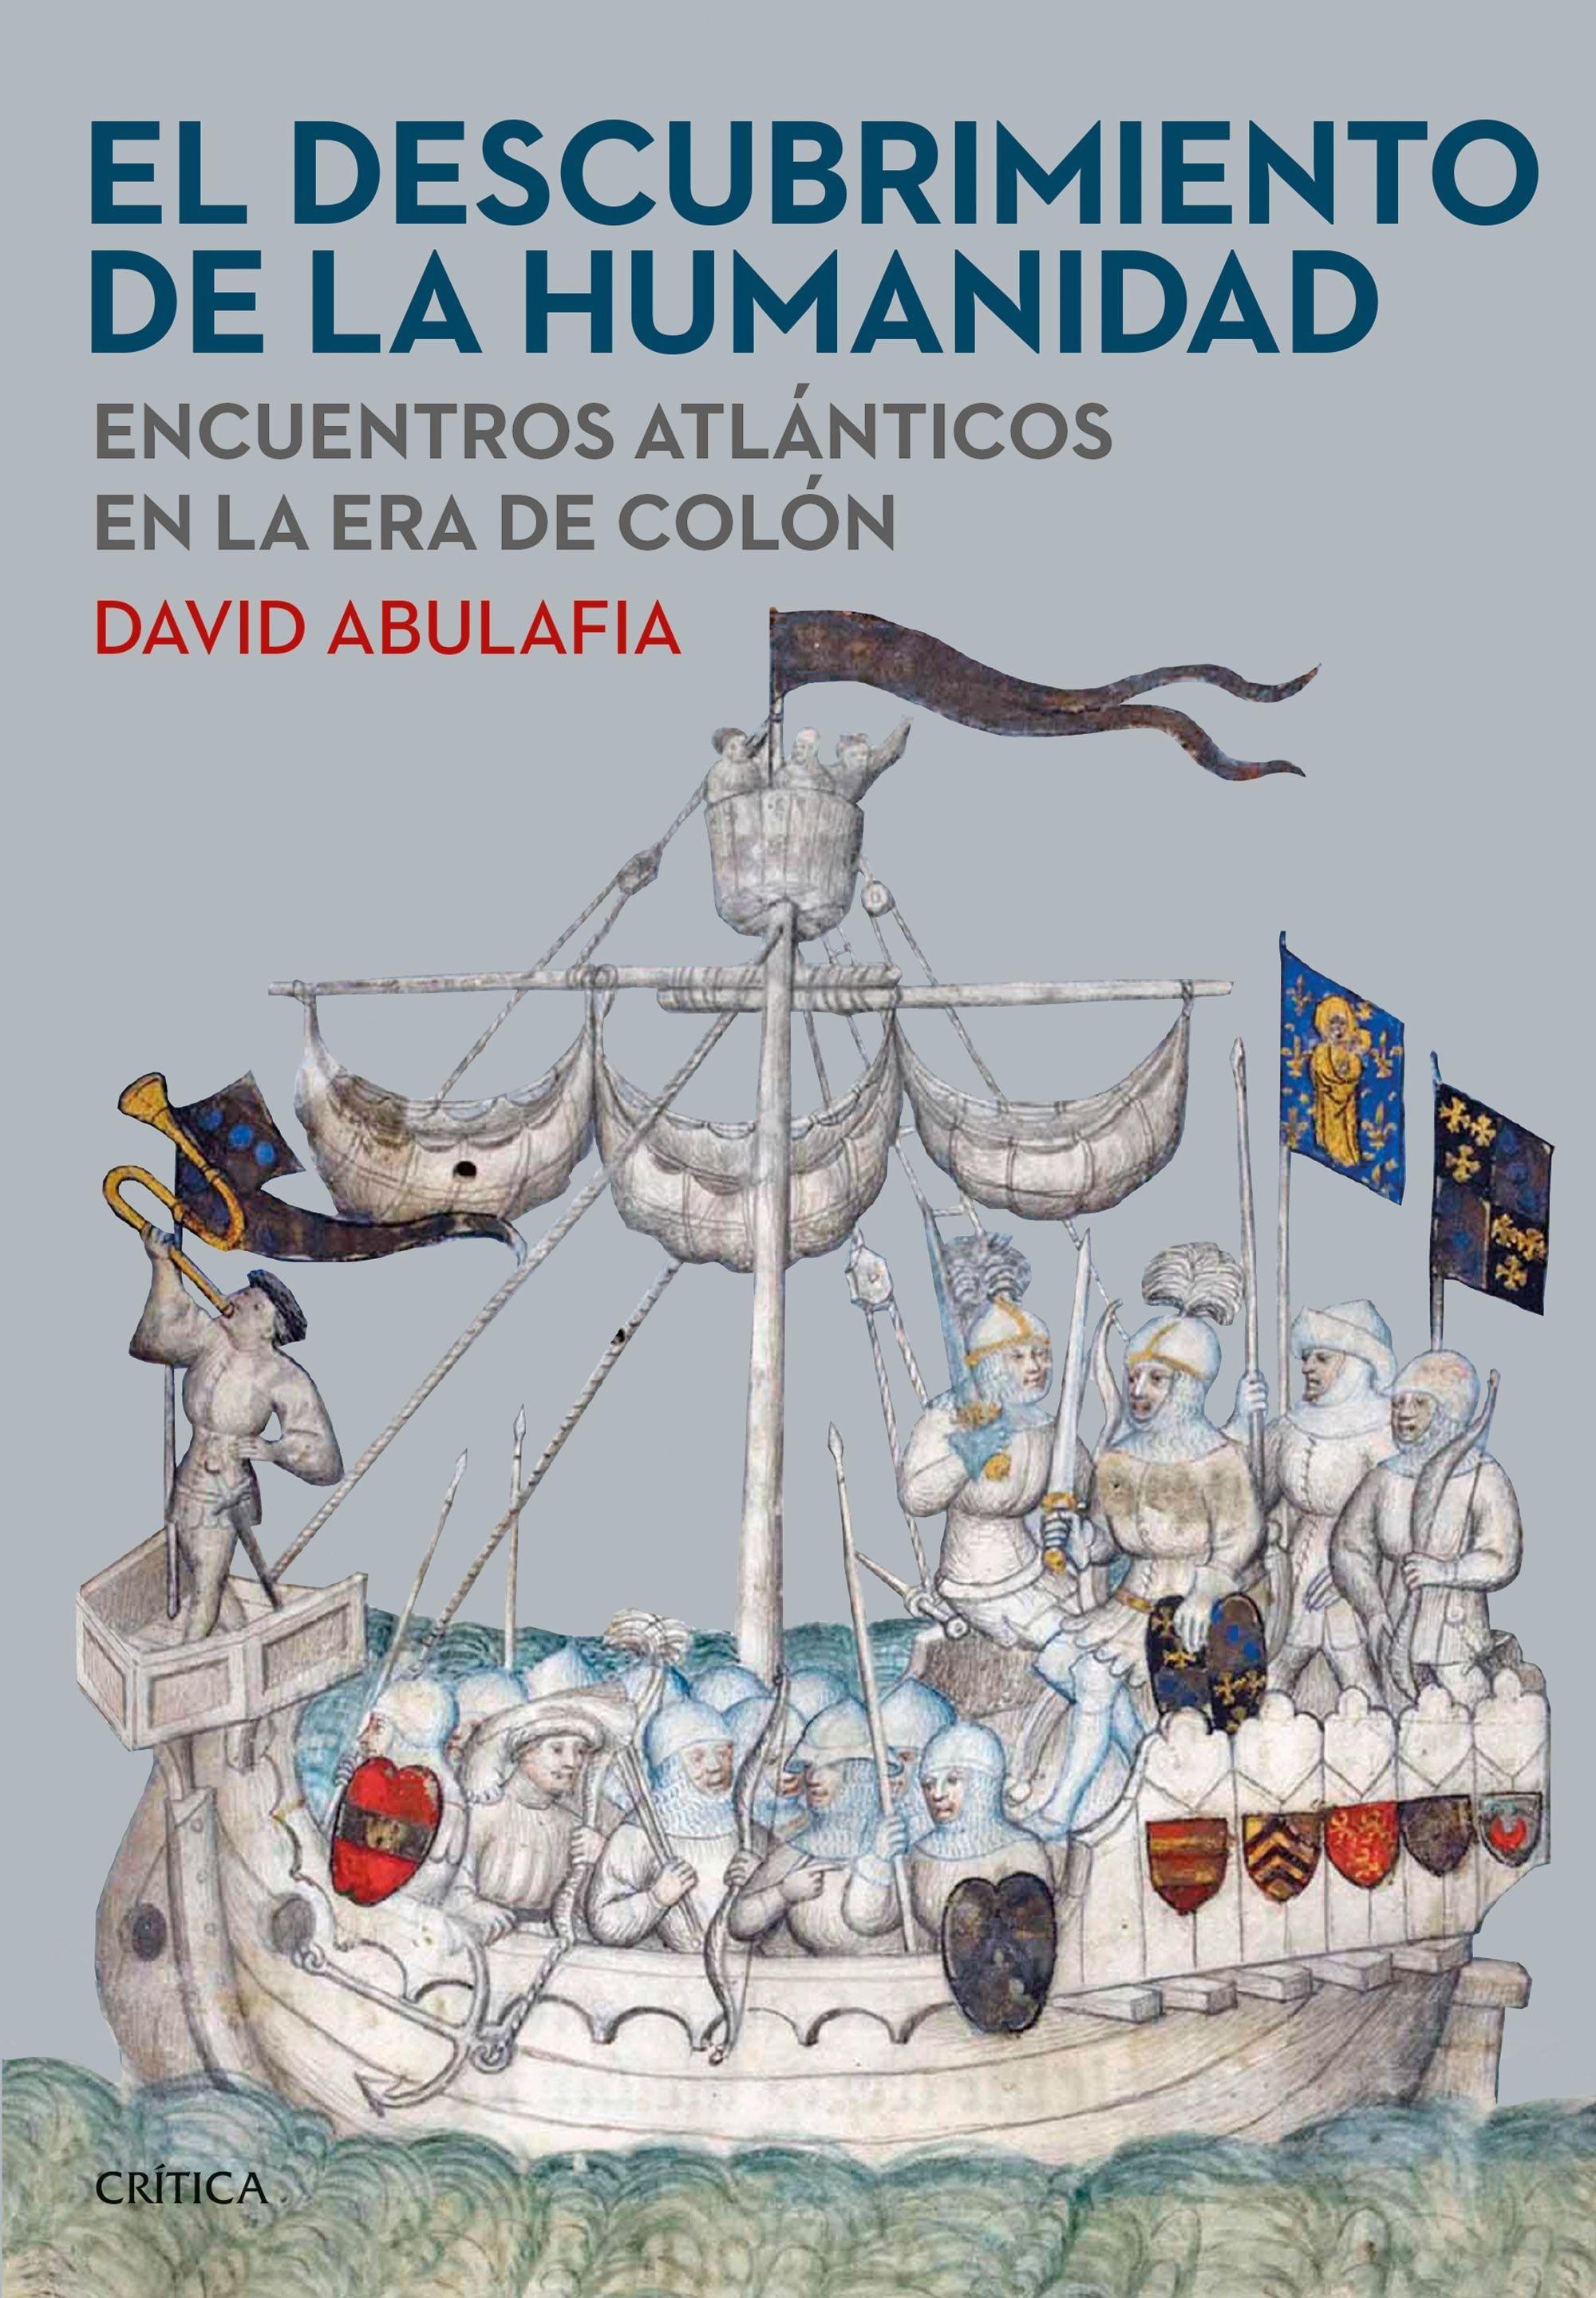 Descubrimiento de la humanidad, El "Encuentros atlánticos en la era de Colón"